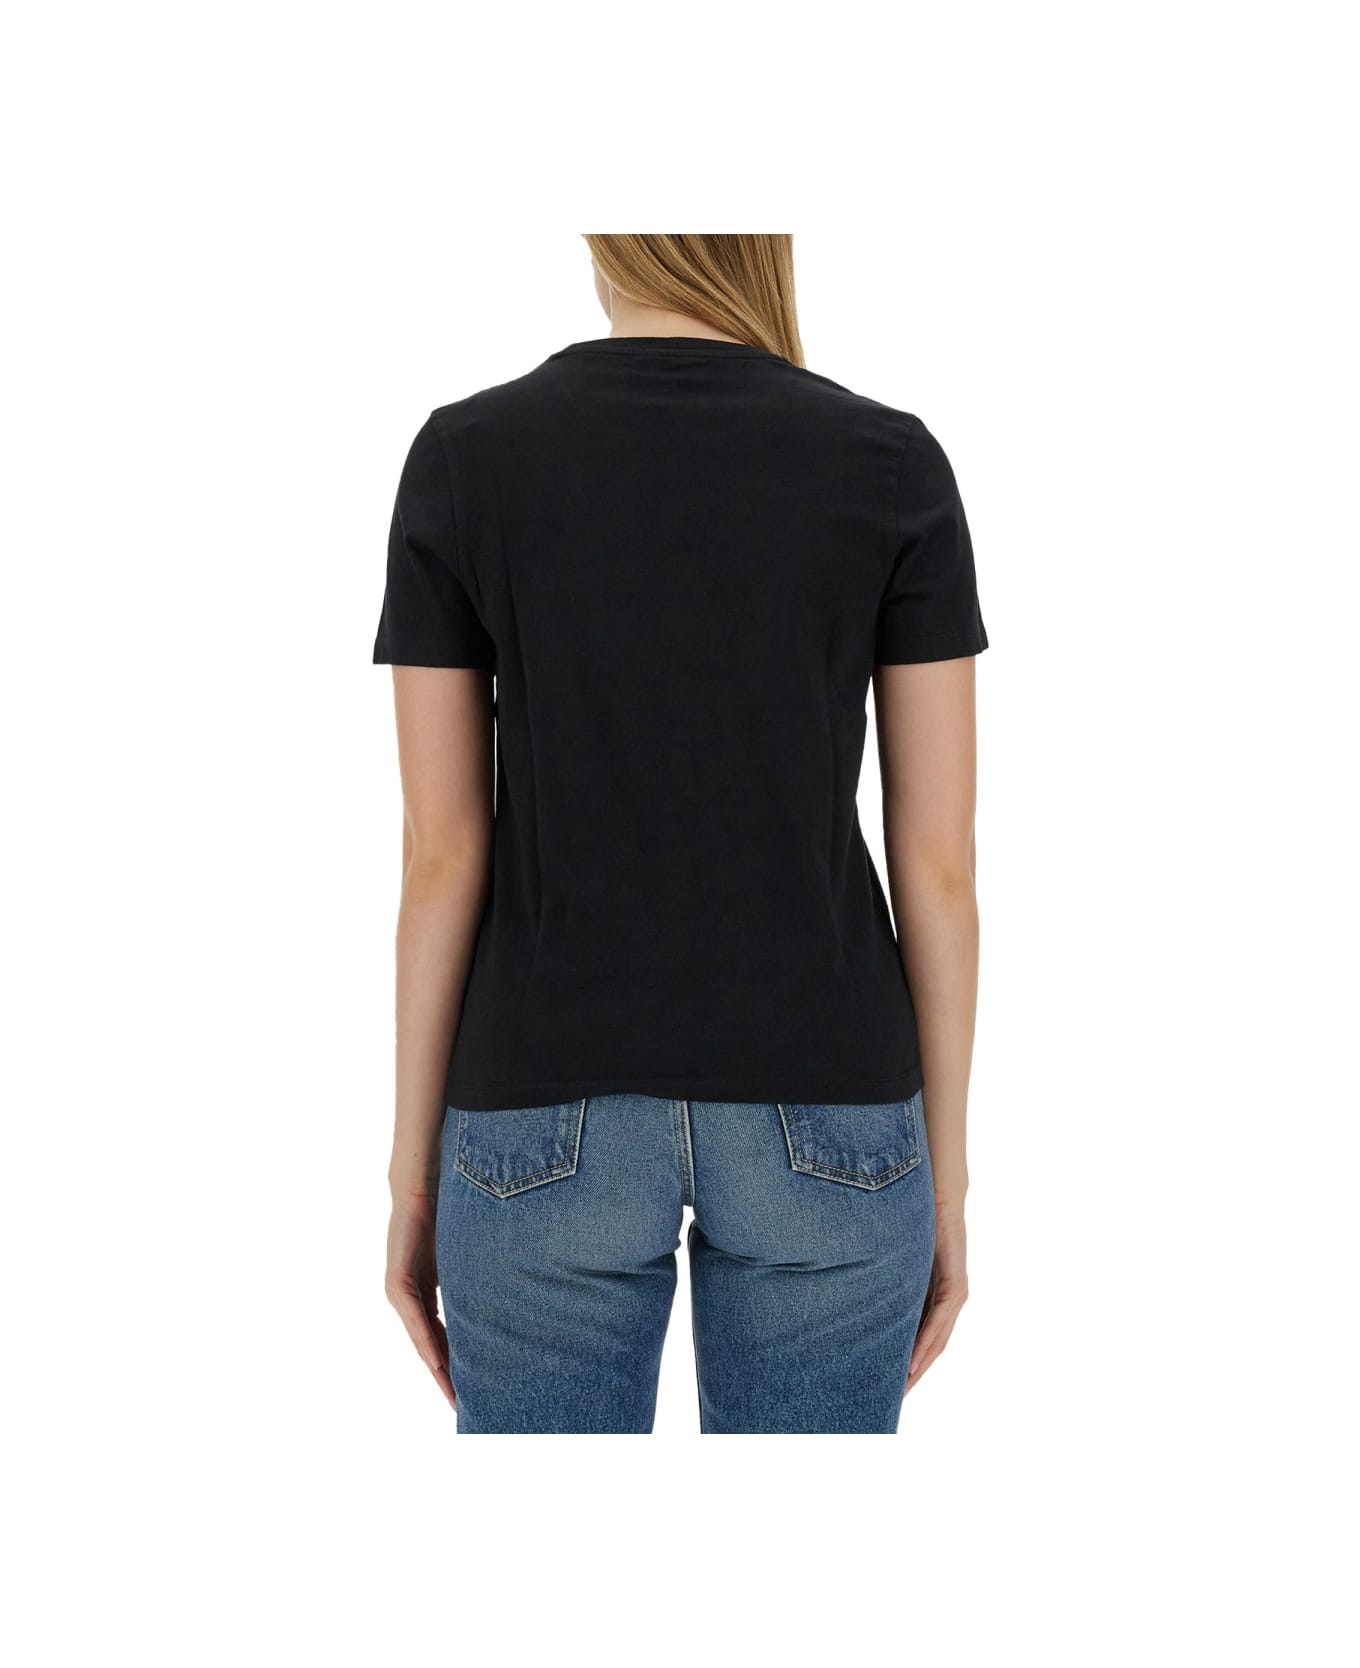 Maison Kitsuné T-shirt With Fox Patch - BLACK Tシャツ